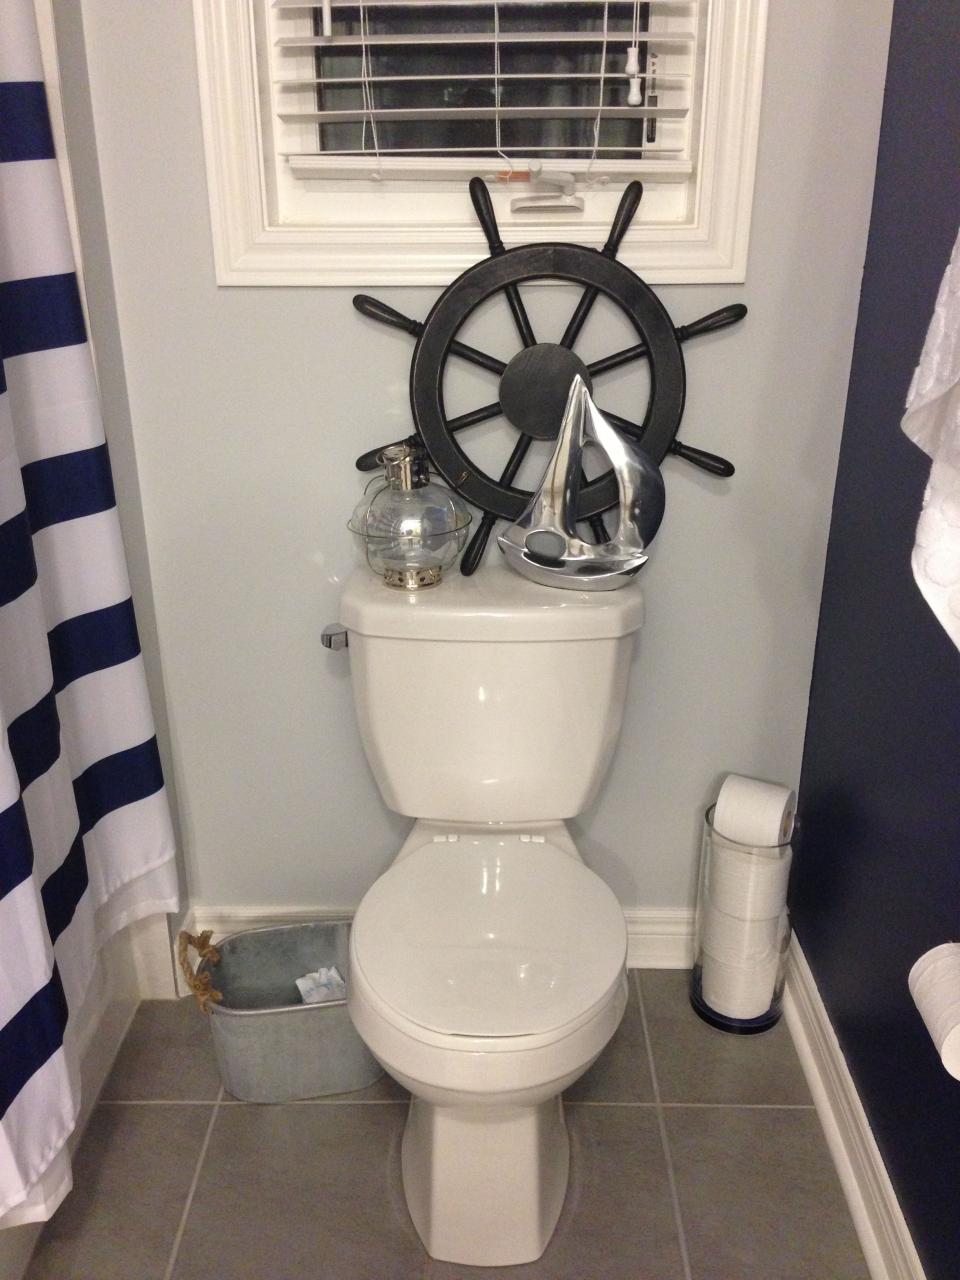 Final toilet decor Nautical theme bathroom, Toilet, Decor